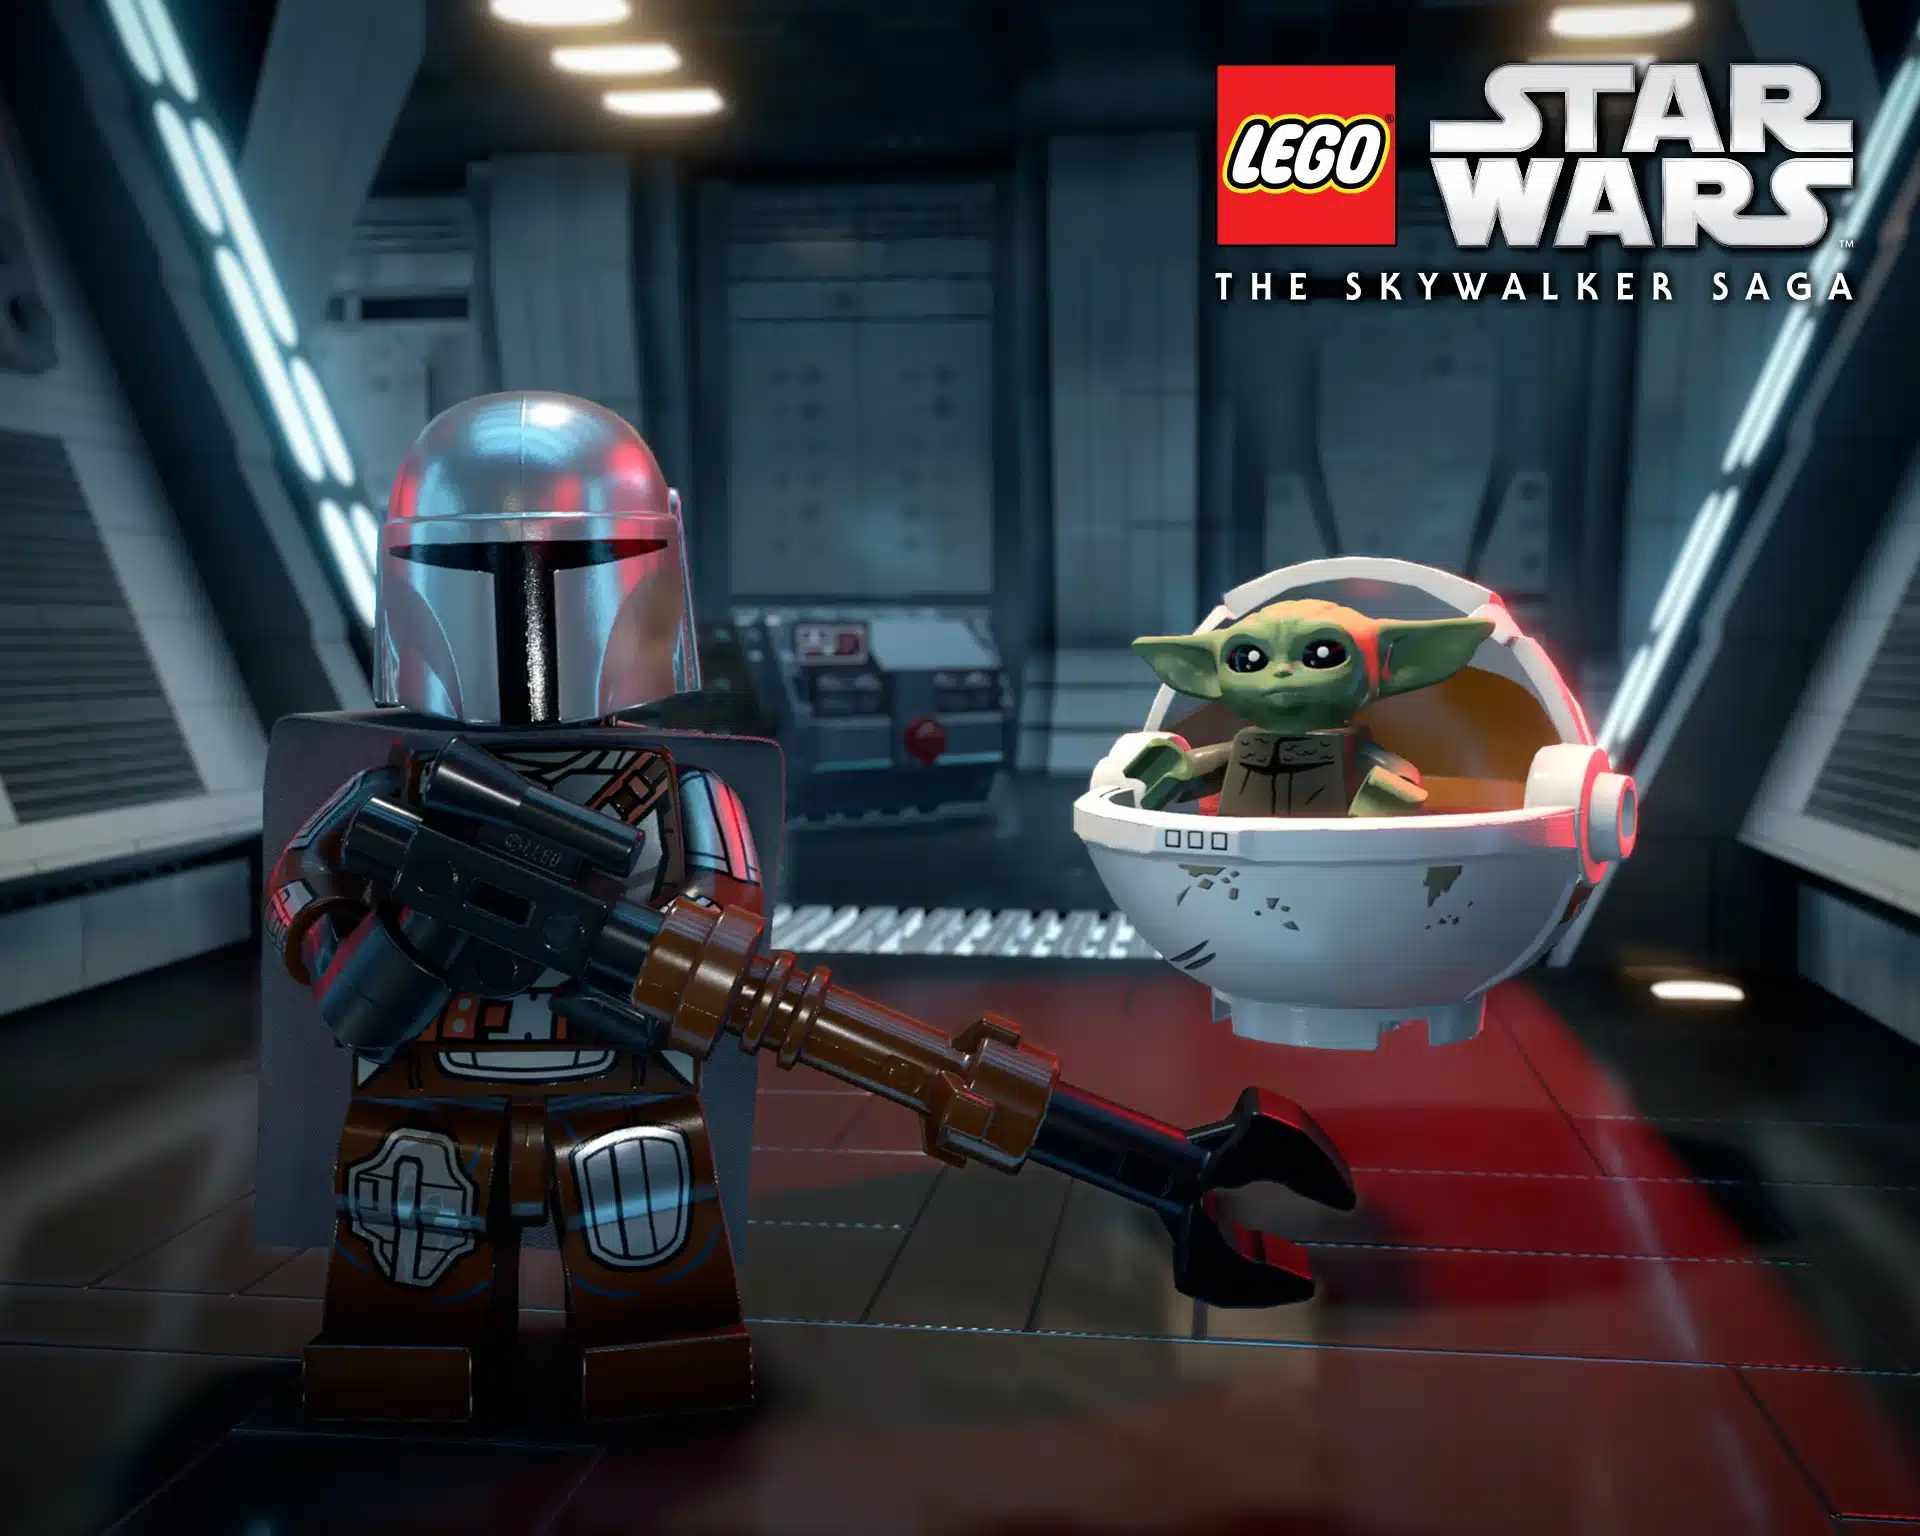 LEGO Star Wars La Saga Skywalker revela nuevo trailer de la Edición Galáctica, GamersRD